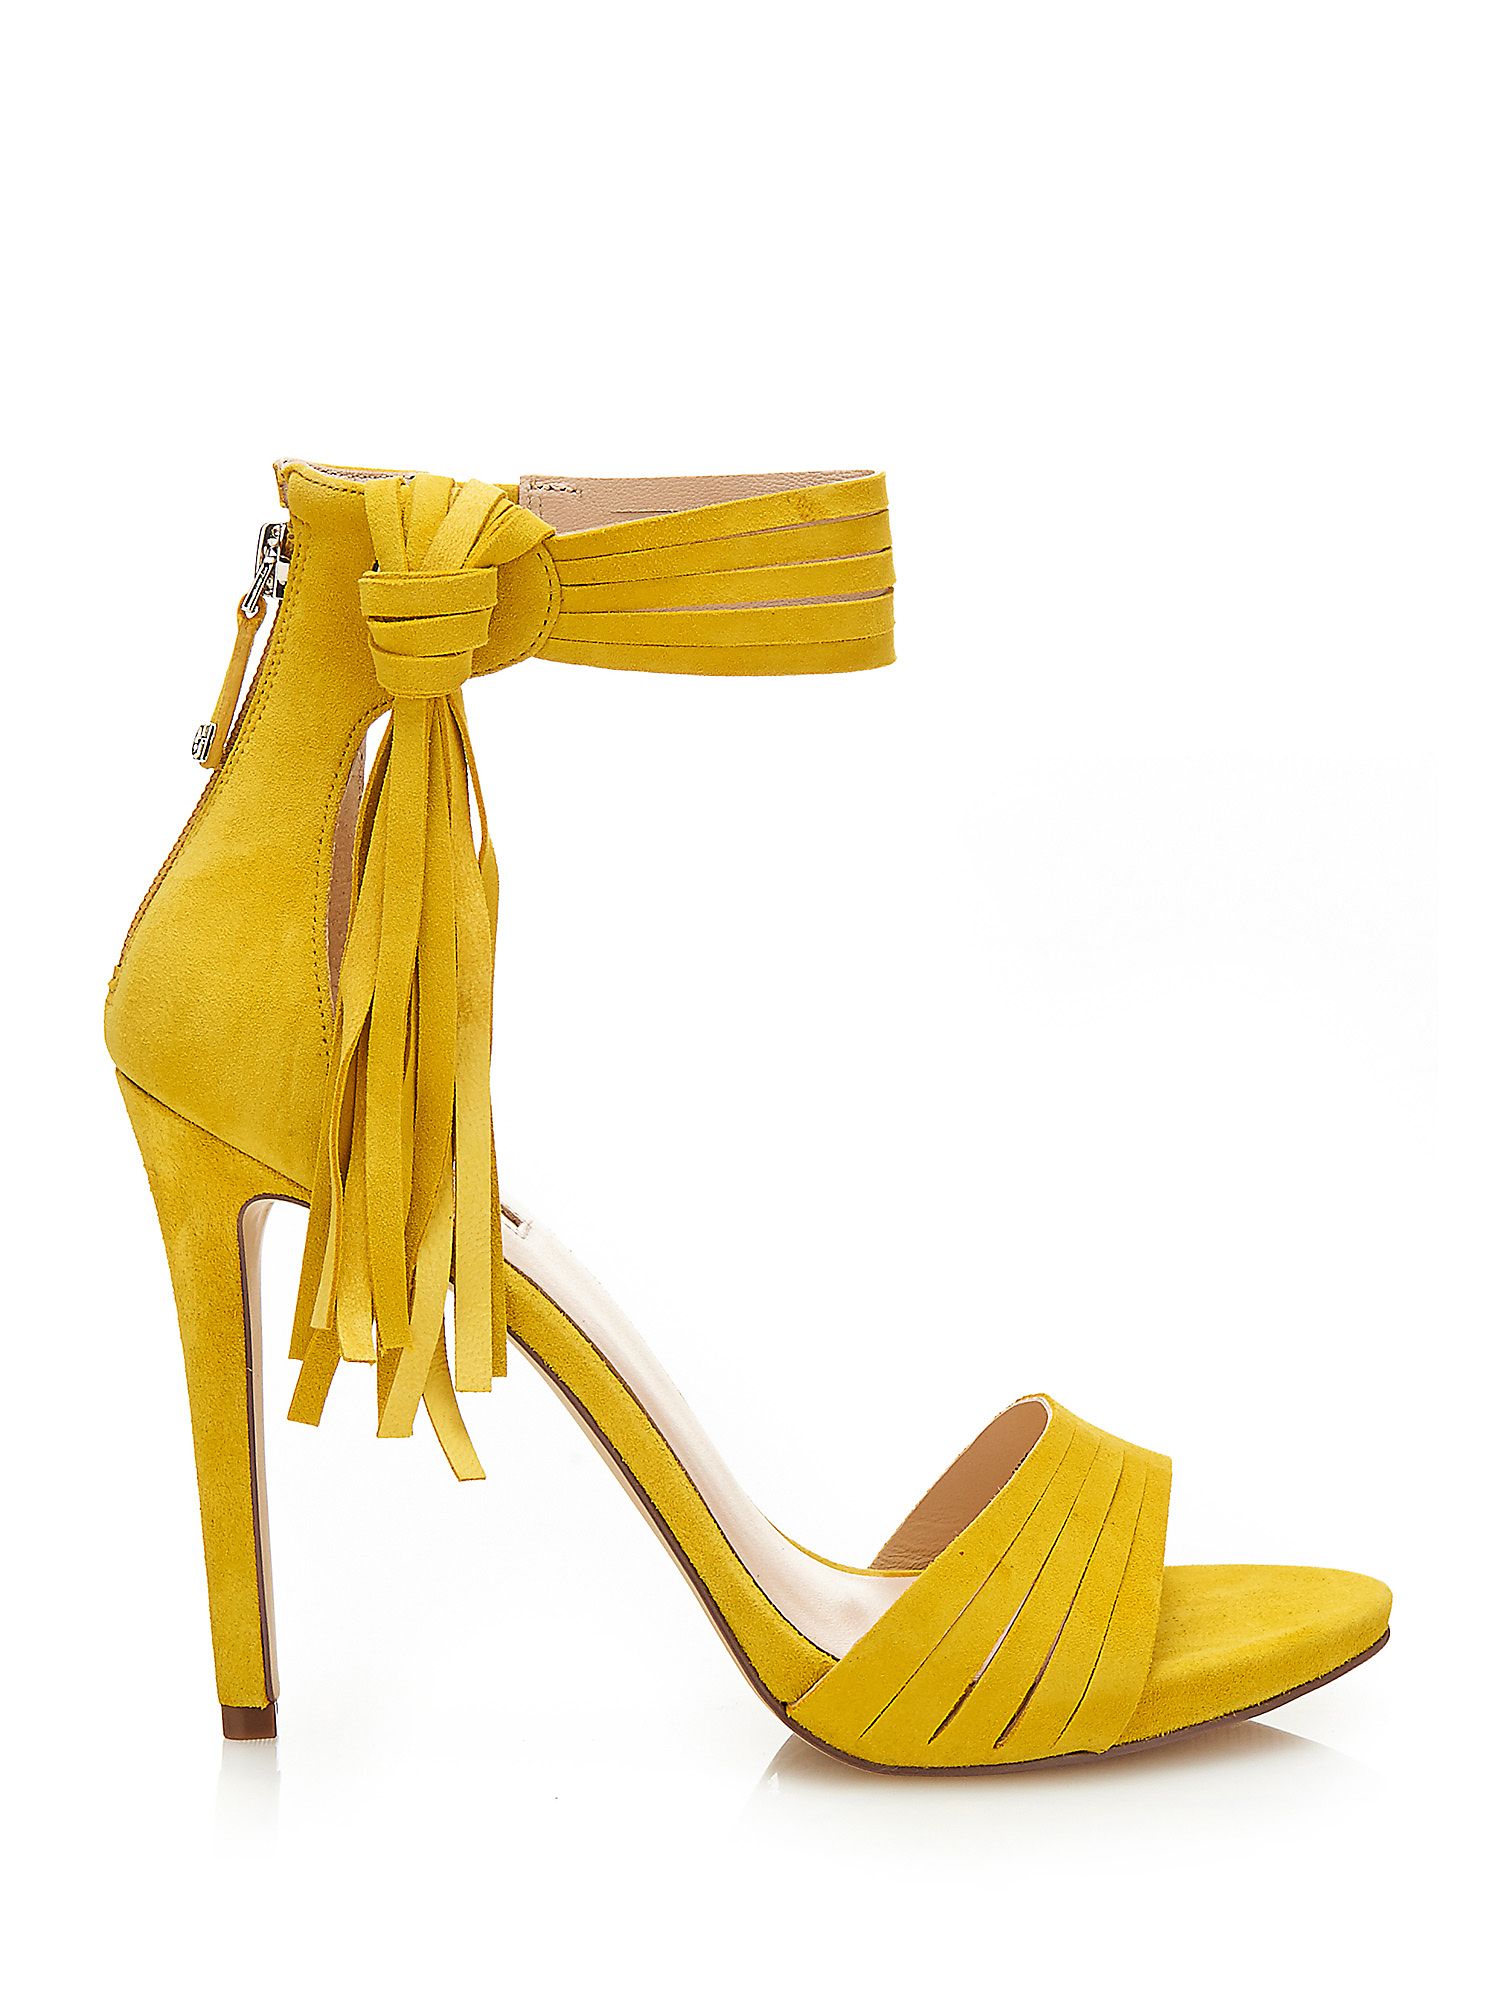 sandali gialli alla moda con tacco alto